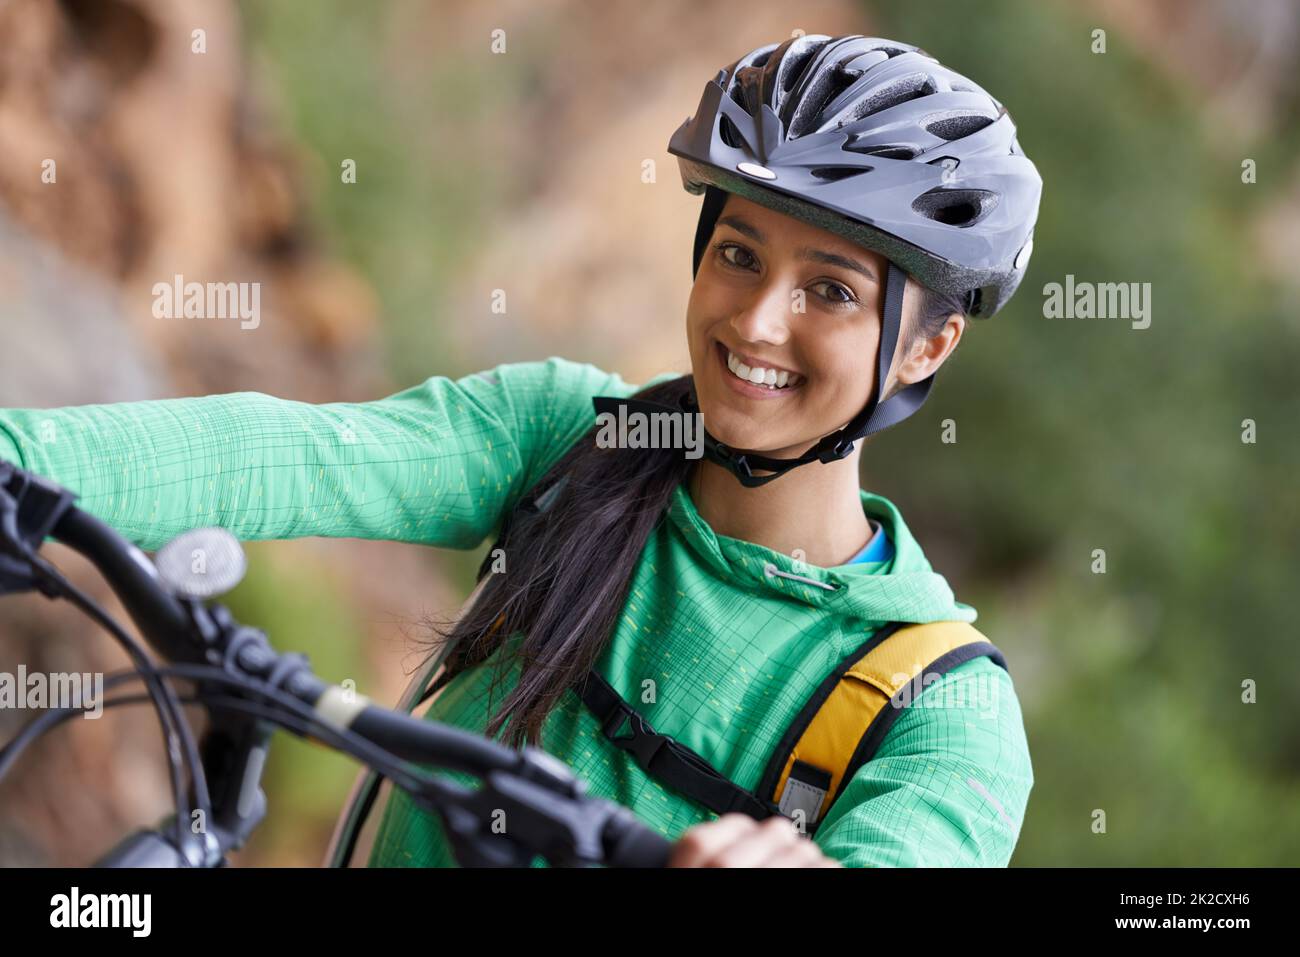 Mountainbiken ist billiger als das Fitnessstudio und hat eine viel bessere Aussicht. Eine reizende junge Frau, die mit dem Mountainbike in einer malerischen Umgebung unterwegs ist. Stockfoto